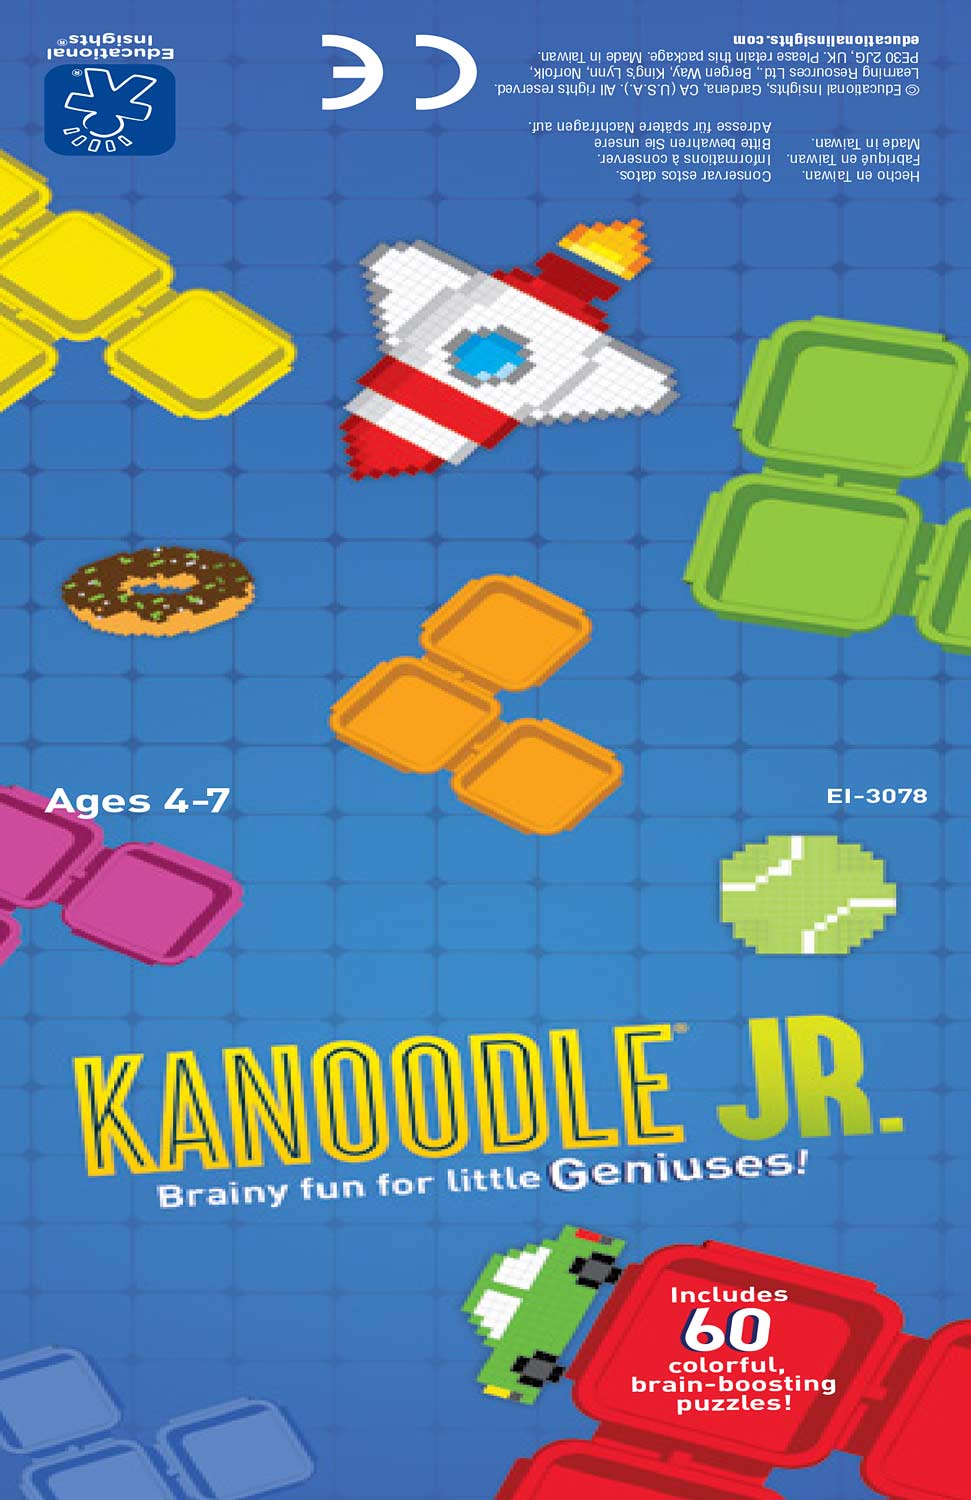 Kanoodle Jr.